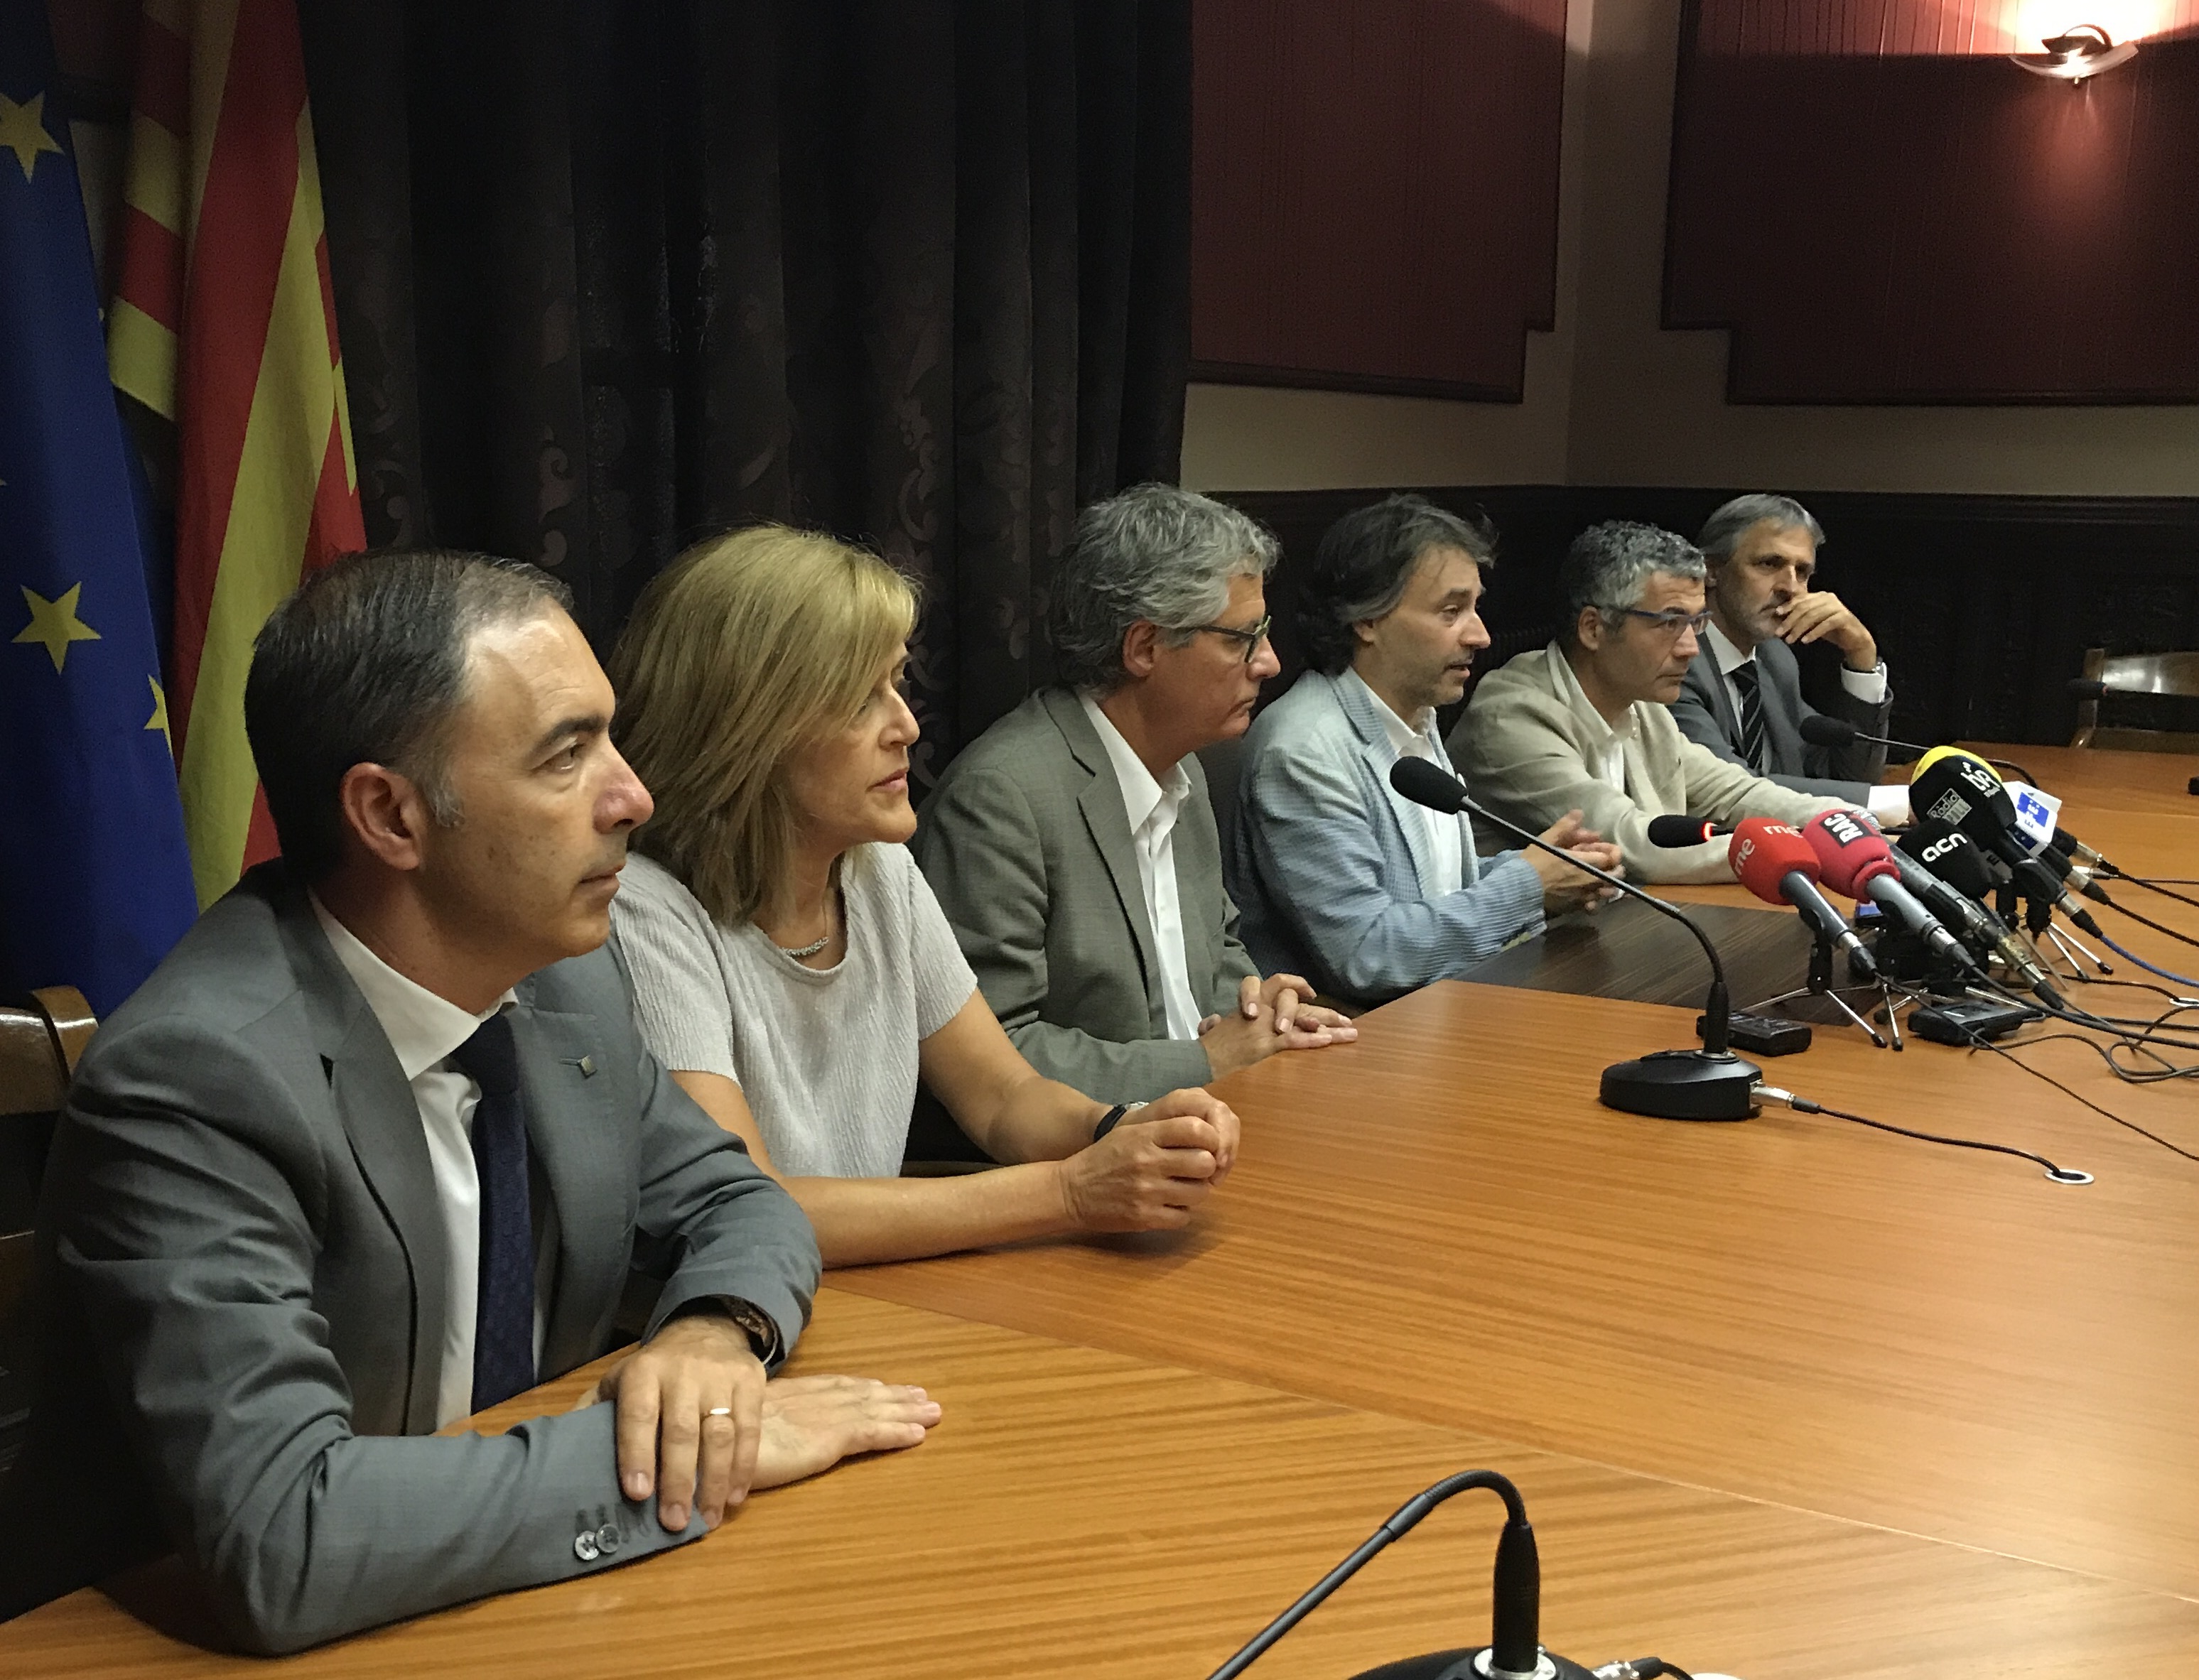 L'alcalde Jordi Munell, al centre, amb representants de la Generalitat aquest dilluns al vespre a Ripoll